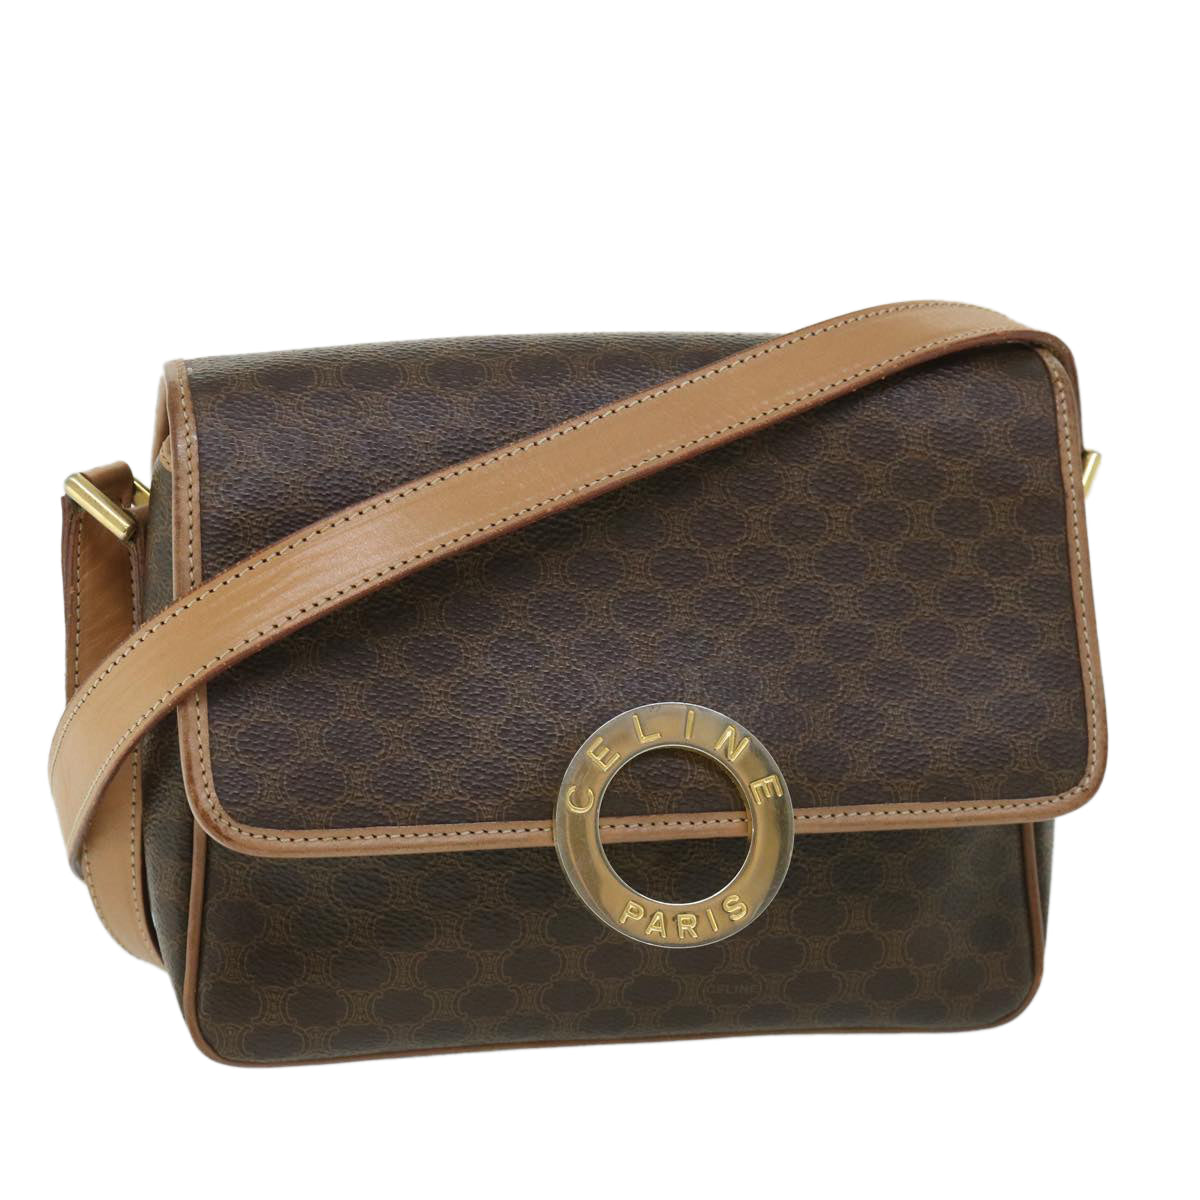 CELINE Macadam Canvas Shoulder Bag PVC Leather Brown Auth 54959